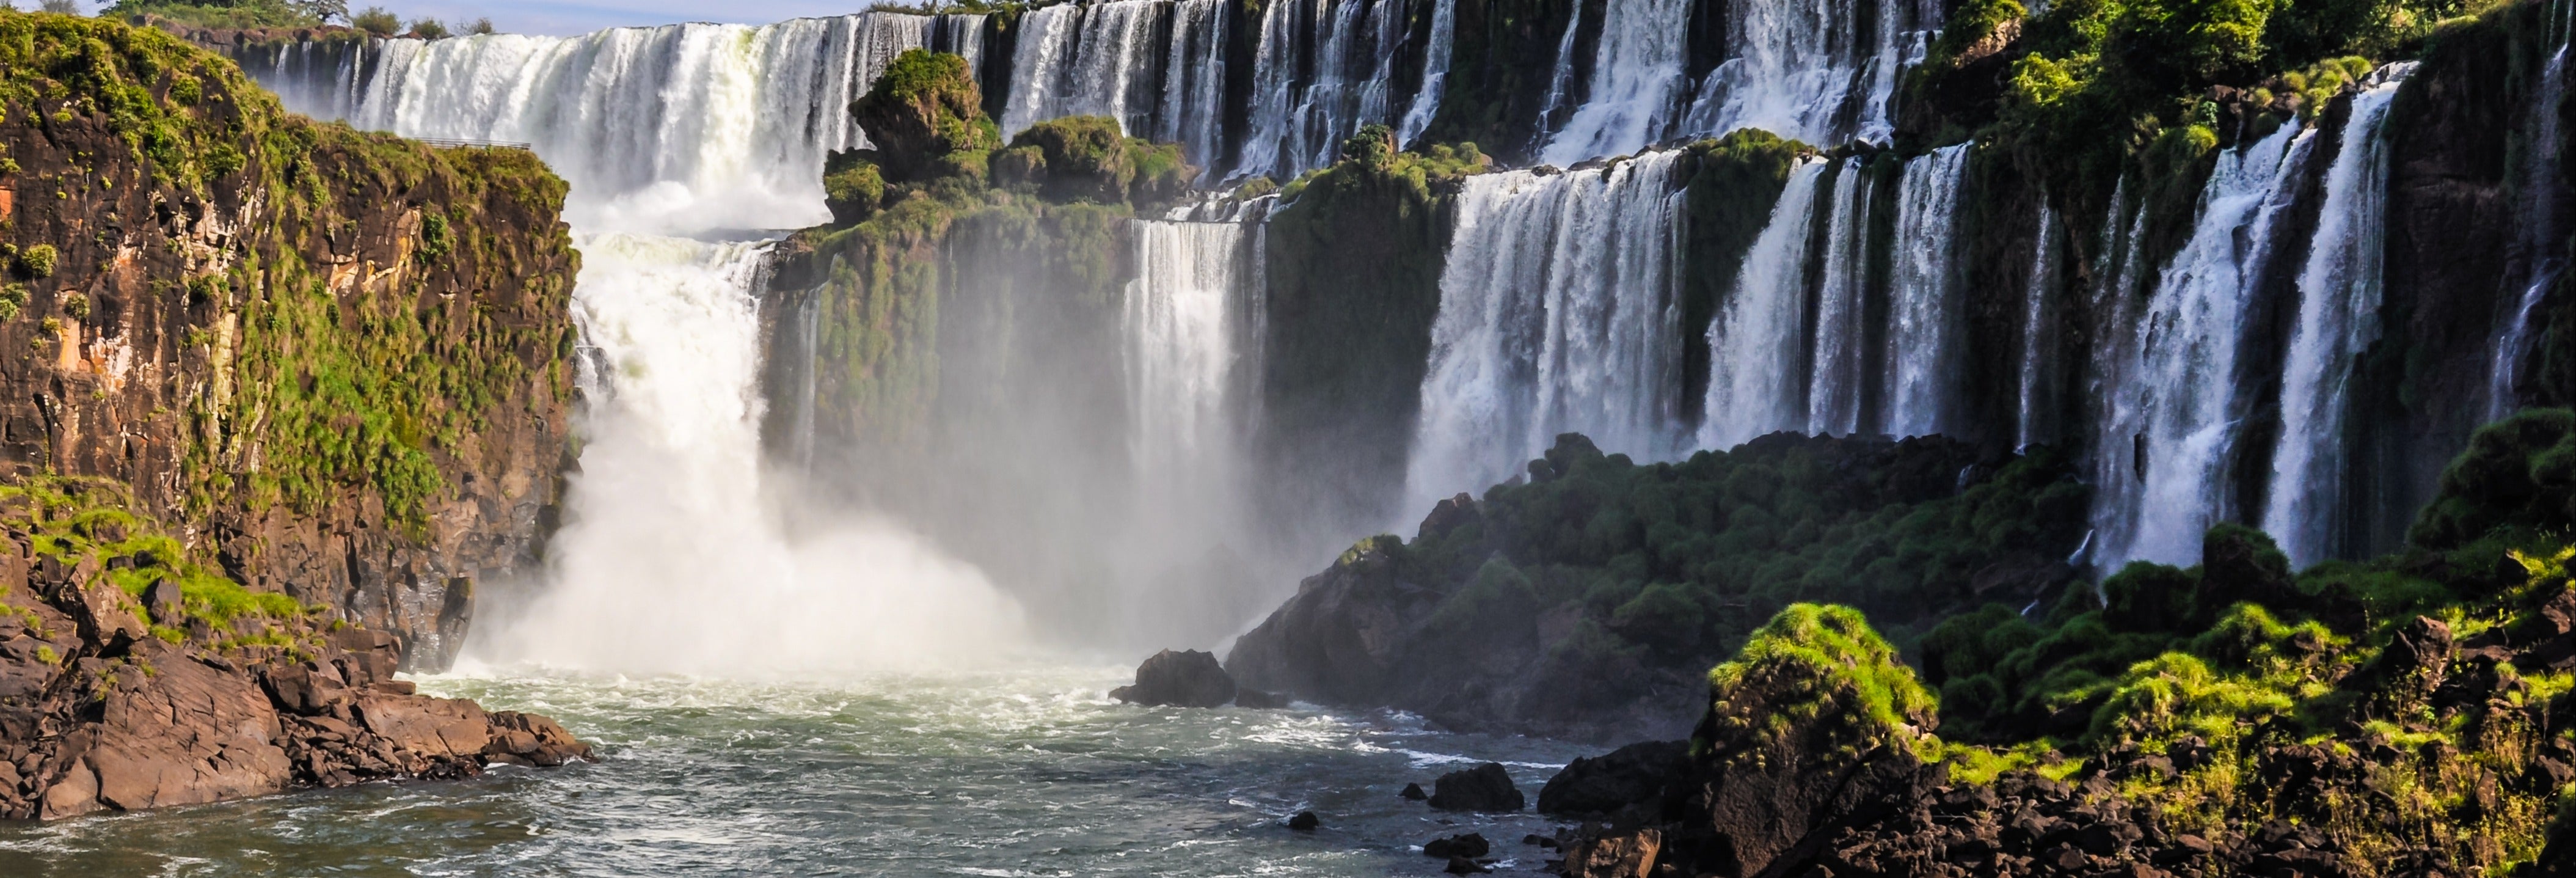 Excursão às Cataratas do Iguaçu e Represa de Itaipu